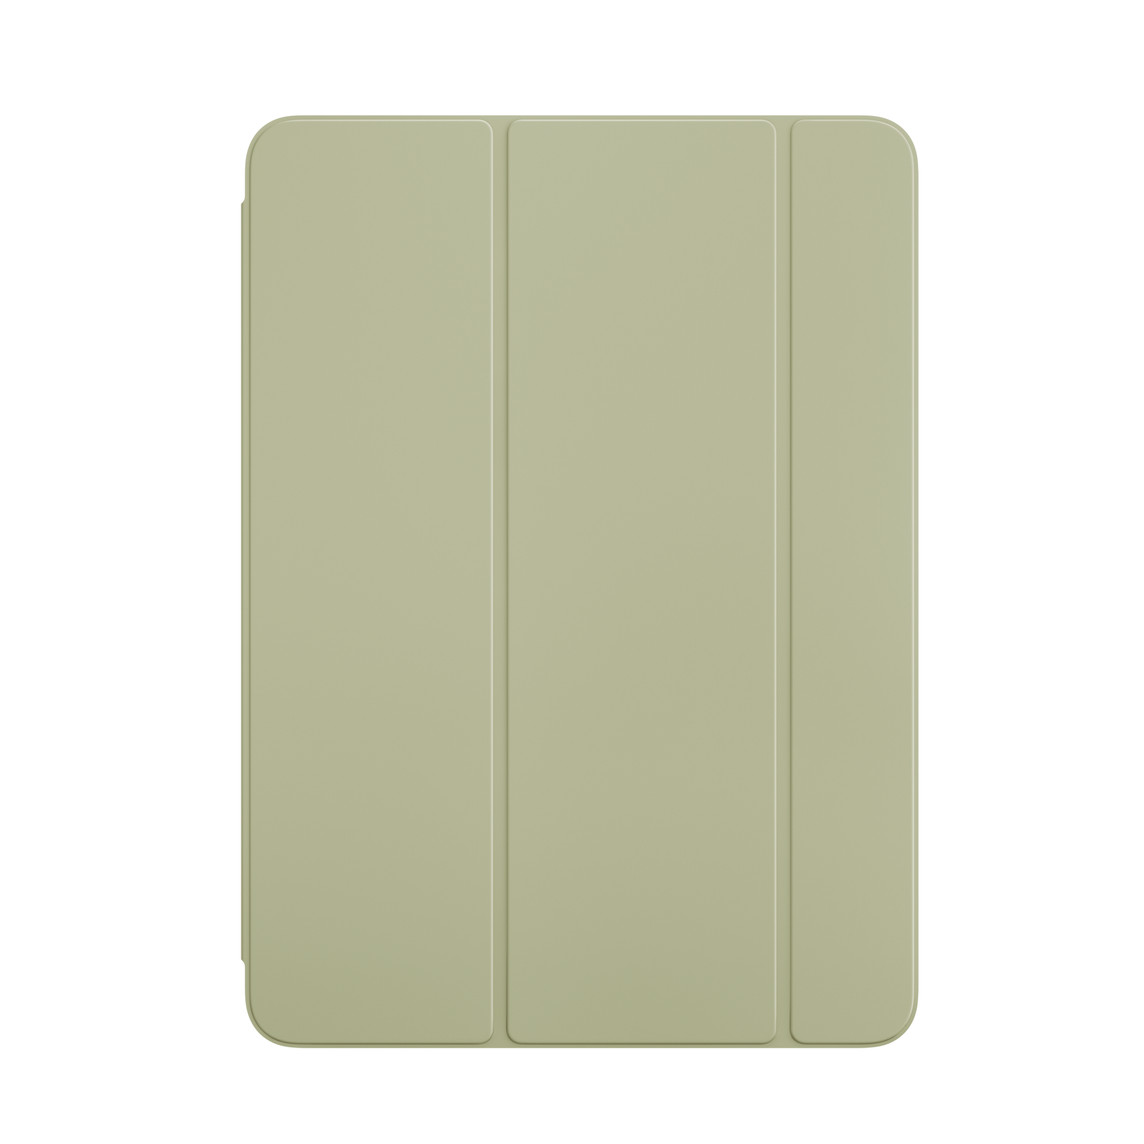 Vỏ ngoài mặt trước của Smart Folio màu Xanh Lá cho iPad Air.